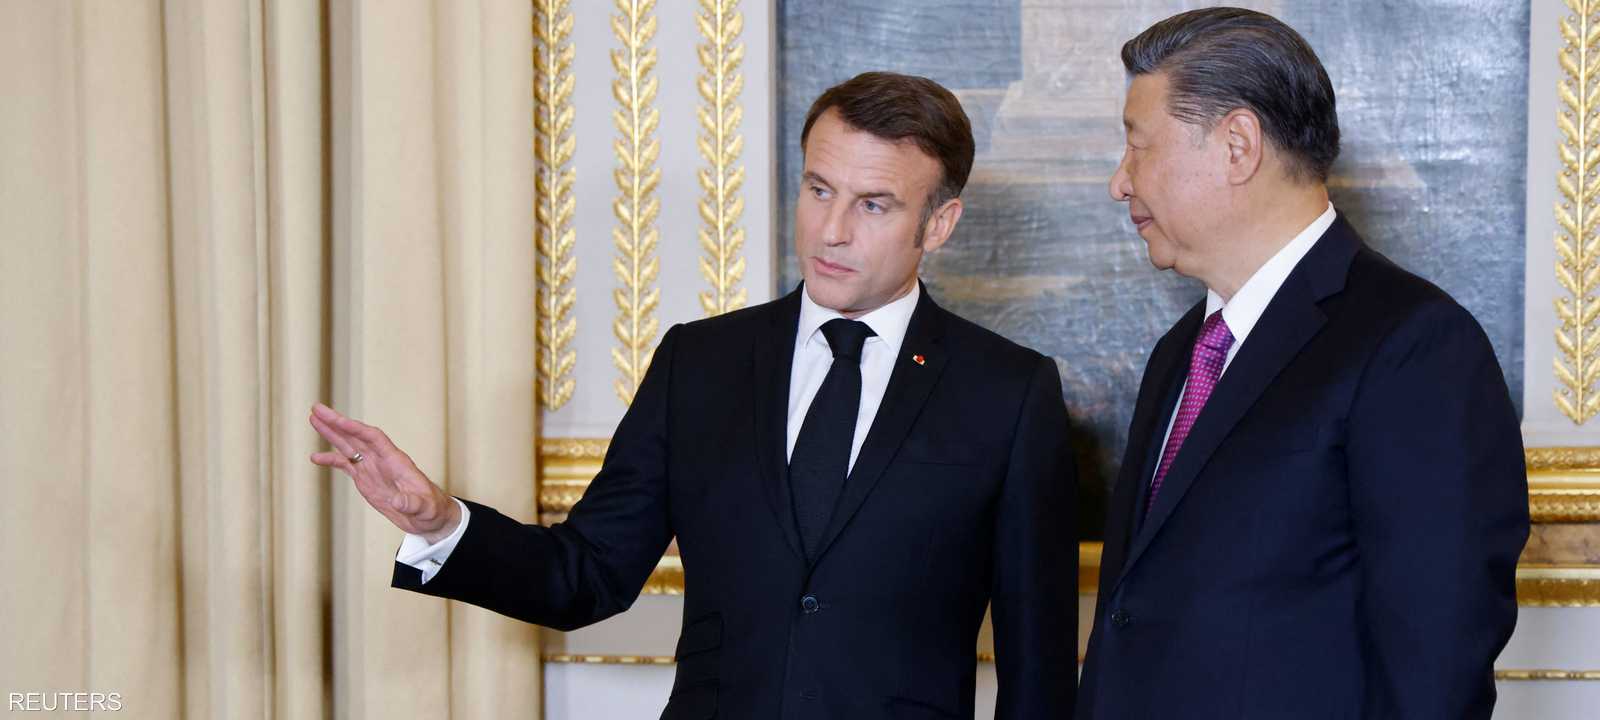 الرئيس الفرنسي ماكرون مع نظيره الرئيس الصيني شي في باريس